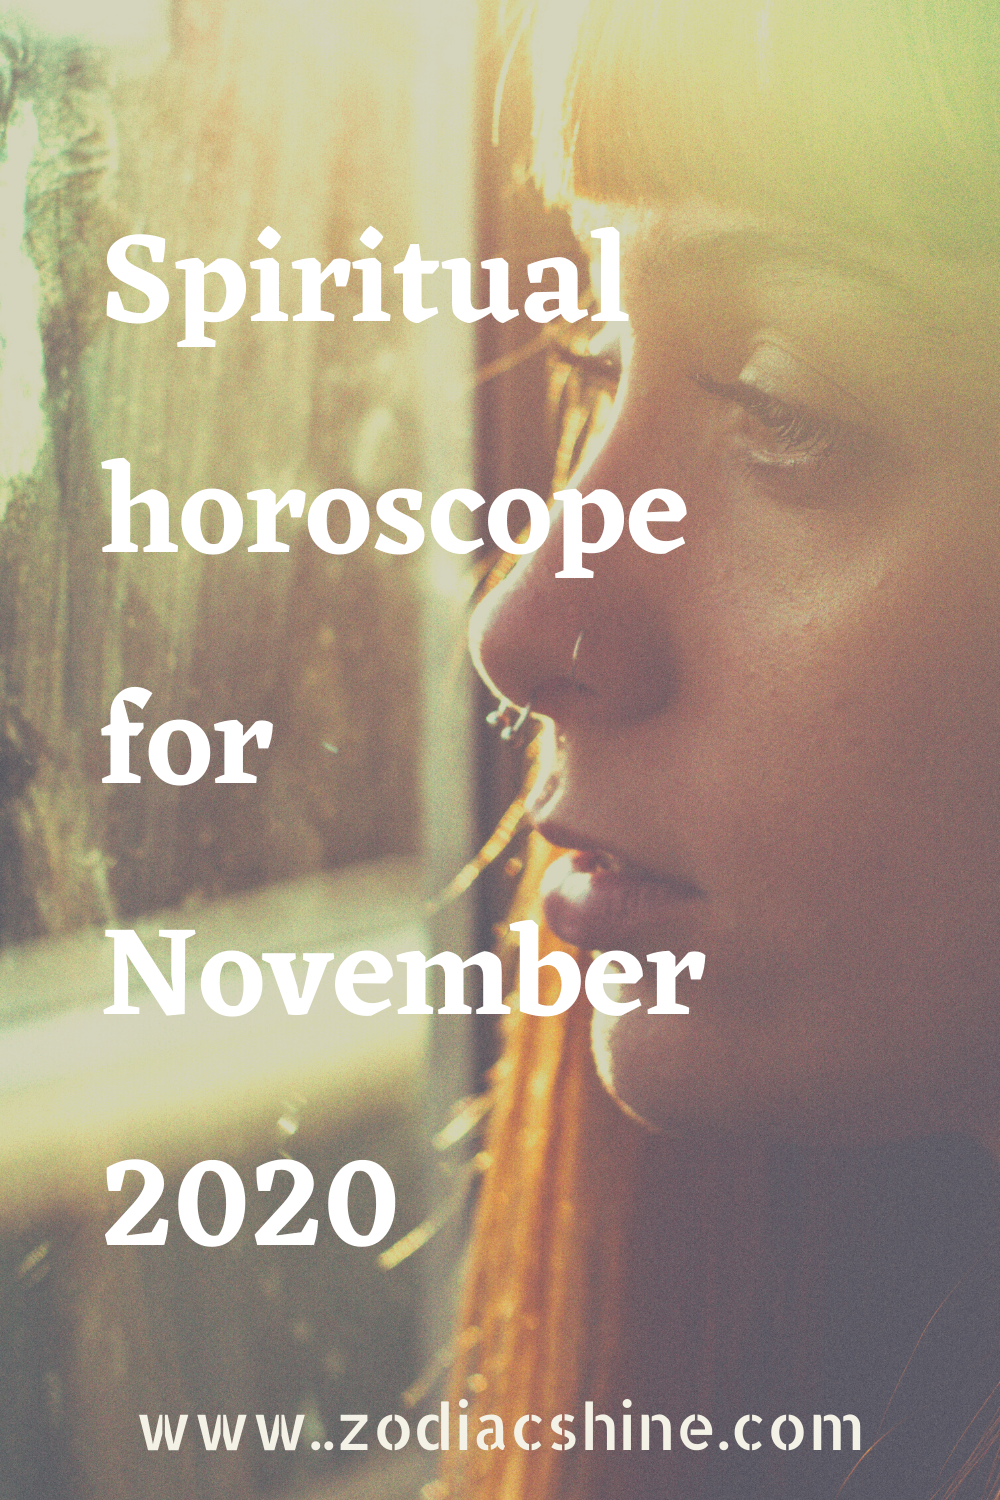 Spiritual horoscope for November 2020